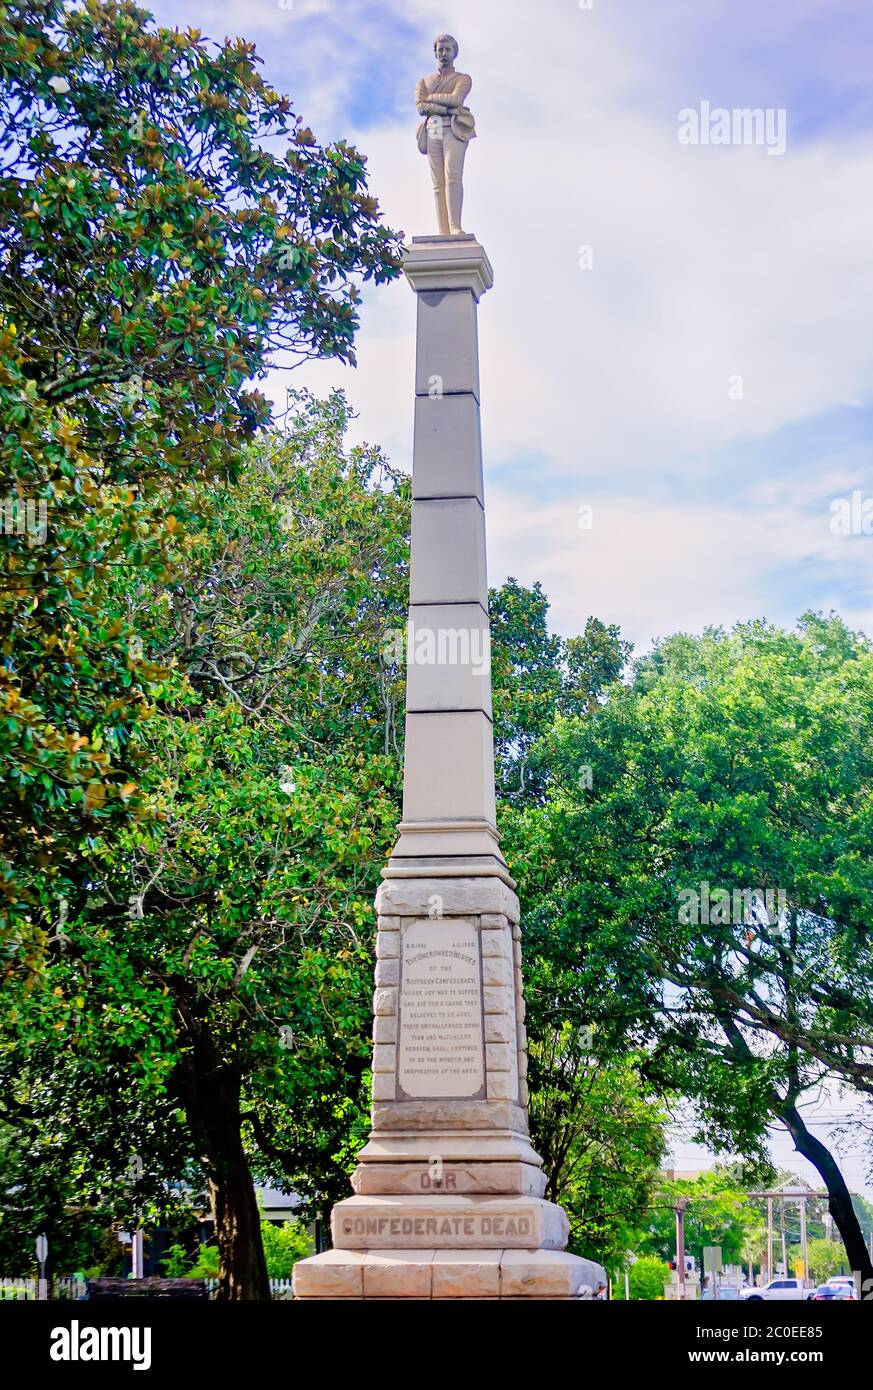 Un monument confédéré se dresse à Lee Square, le 10 juin 2020, à Pensacola, en Floride. La ville discute de se retirer après les manifestations de la vie noire. Banque D'Images